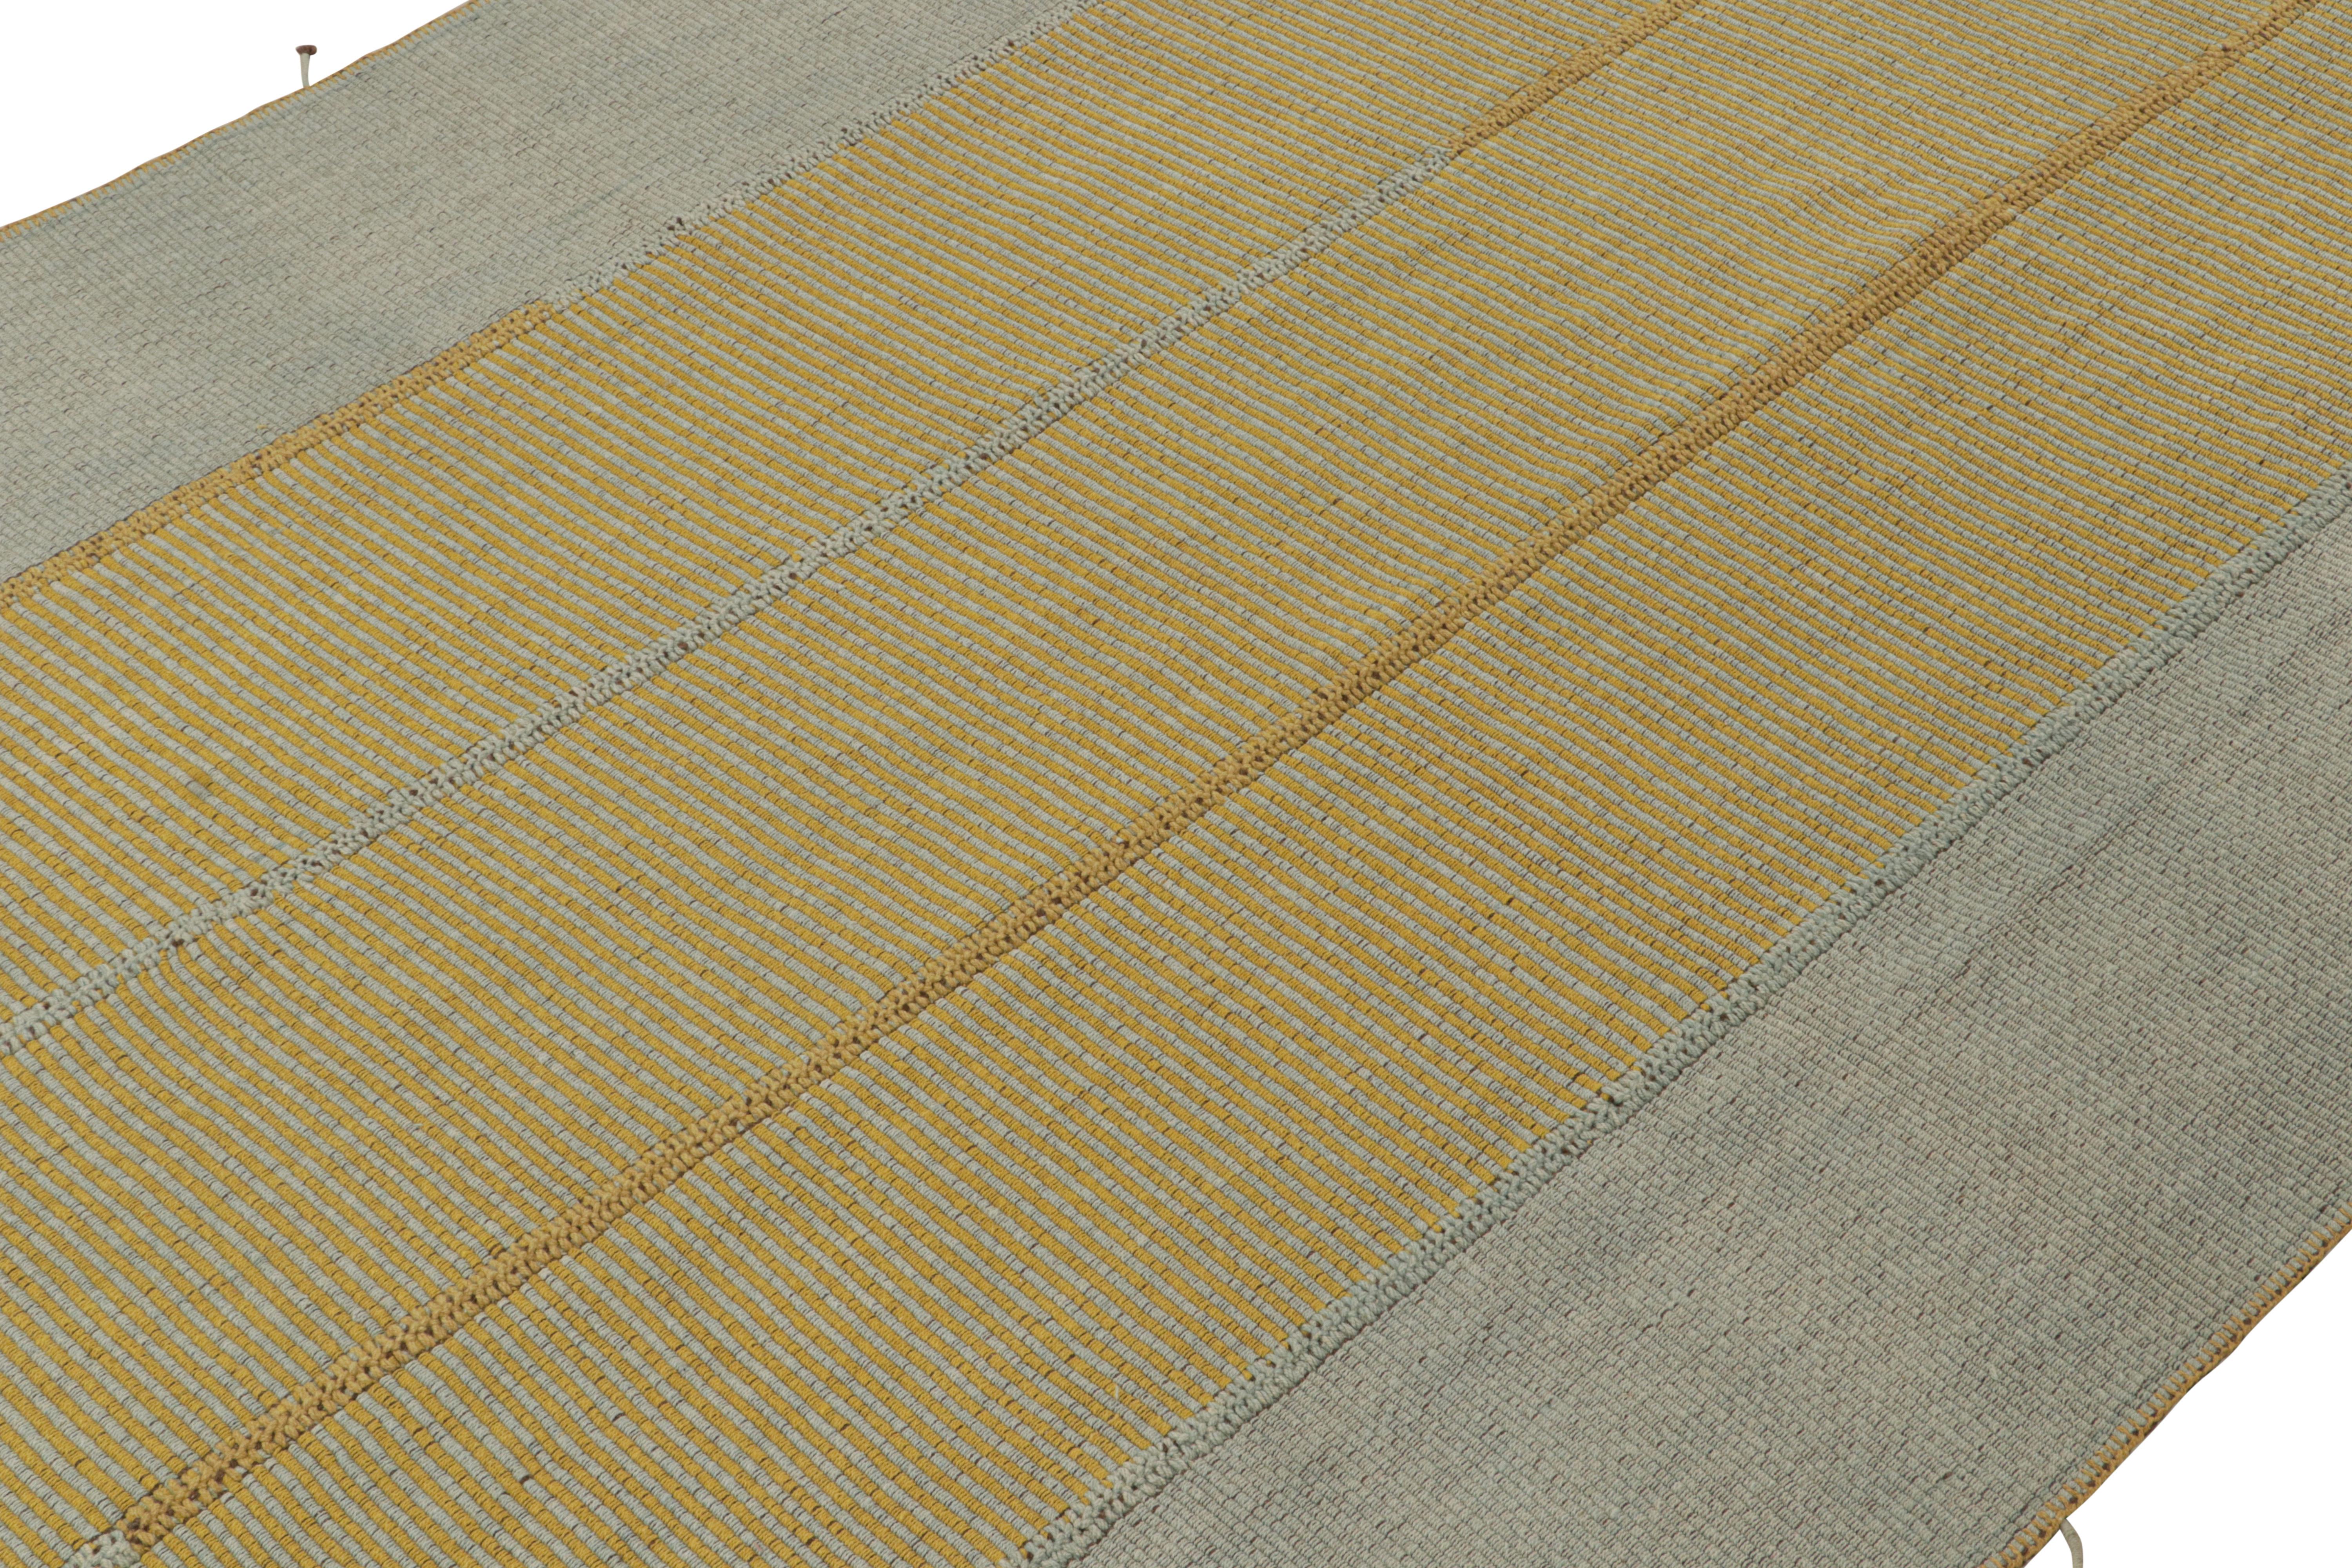 Tissé à la main en laine, ce kilim 9x12 fait partie d'une nouvelle ligne audacieuse de tissages plats contemporains de Rug & Kilim.

Sur le Design : 
Connotant une version moderne du tissage de panneaux classique, notre dernier 